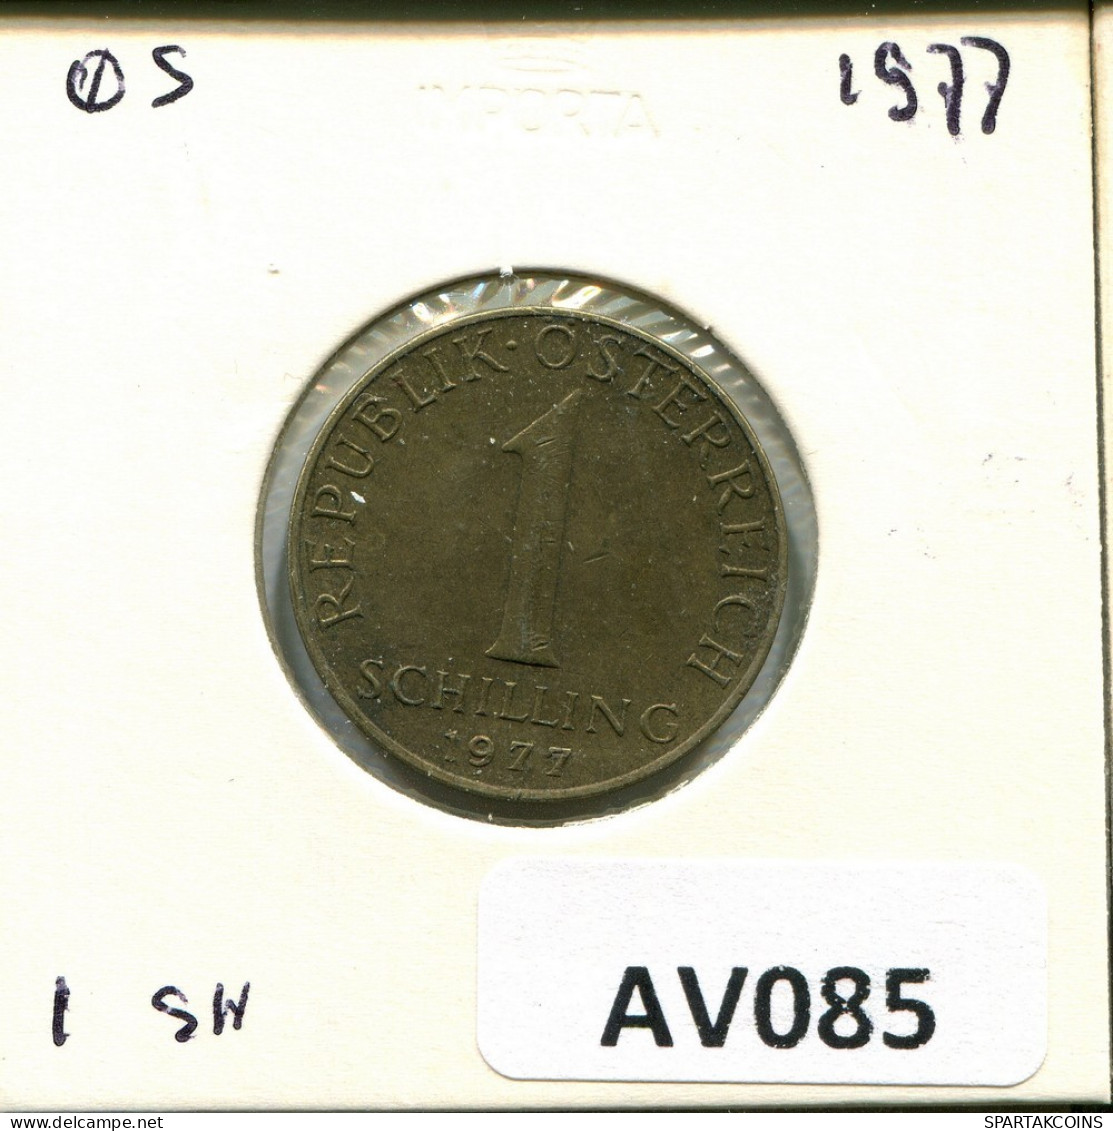 1 SCHILLING 1977 AUSTRIA Moneda #AV085.E.A - Oesterreich